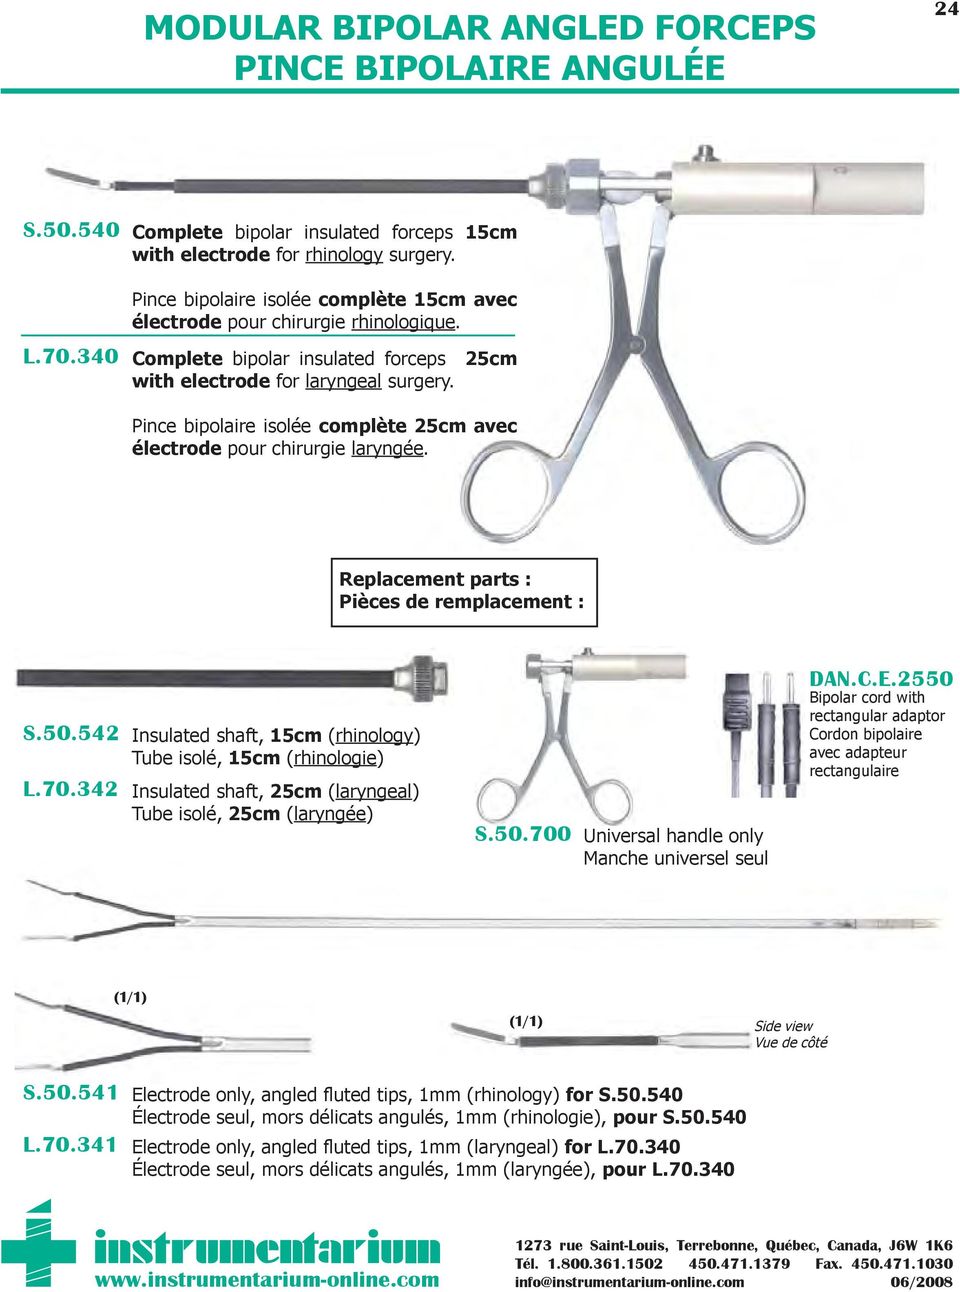 Pince bipolaire isolée complète 25cm avec électrode pour chirurgie laryngée. Replacement parts : Pièces de remplacement : S.50.542 L.70.